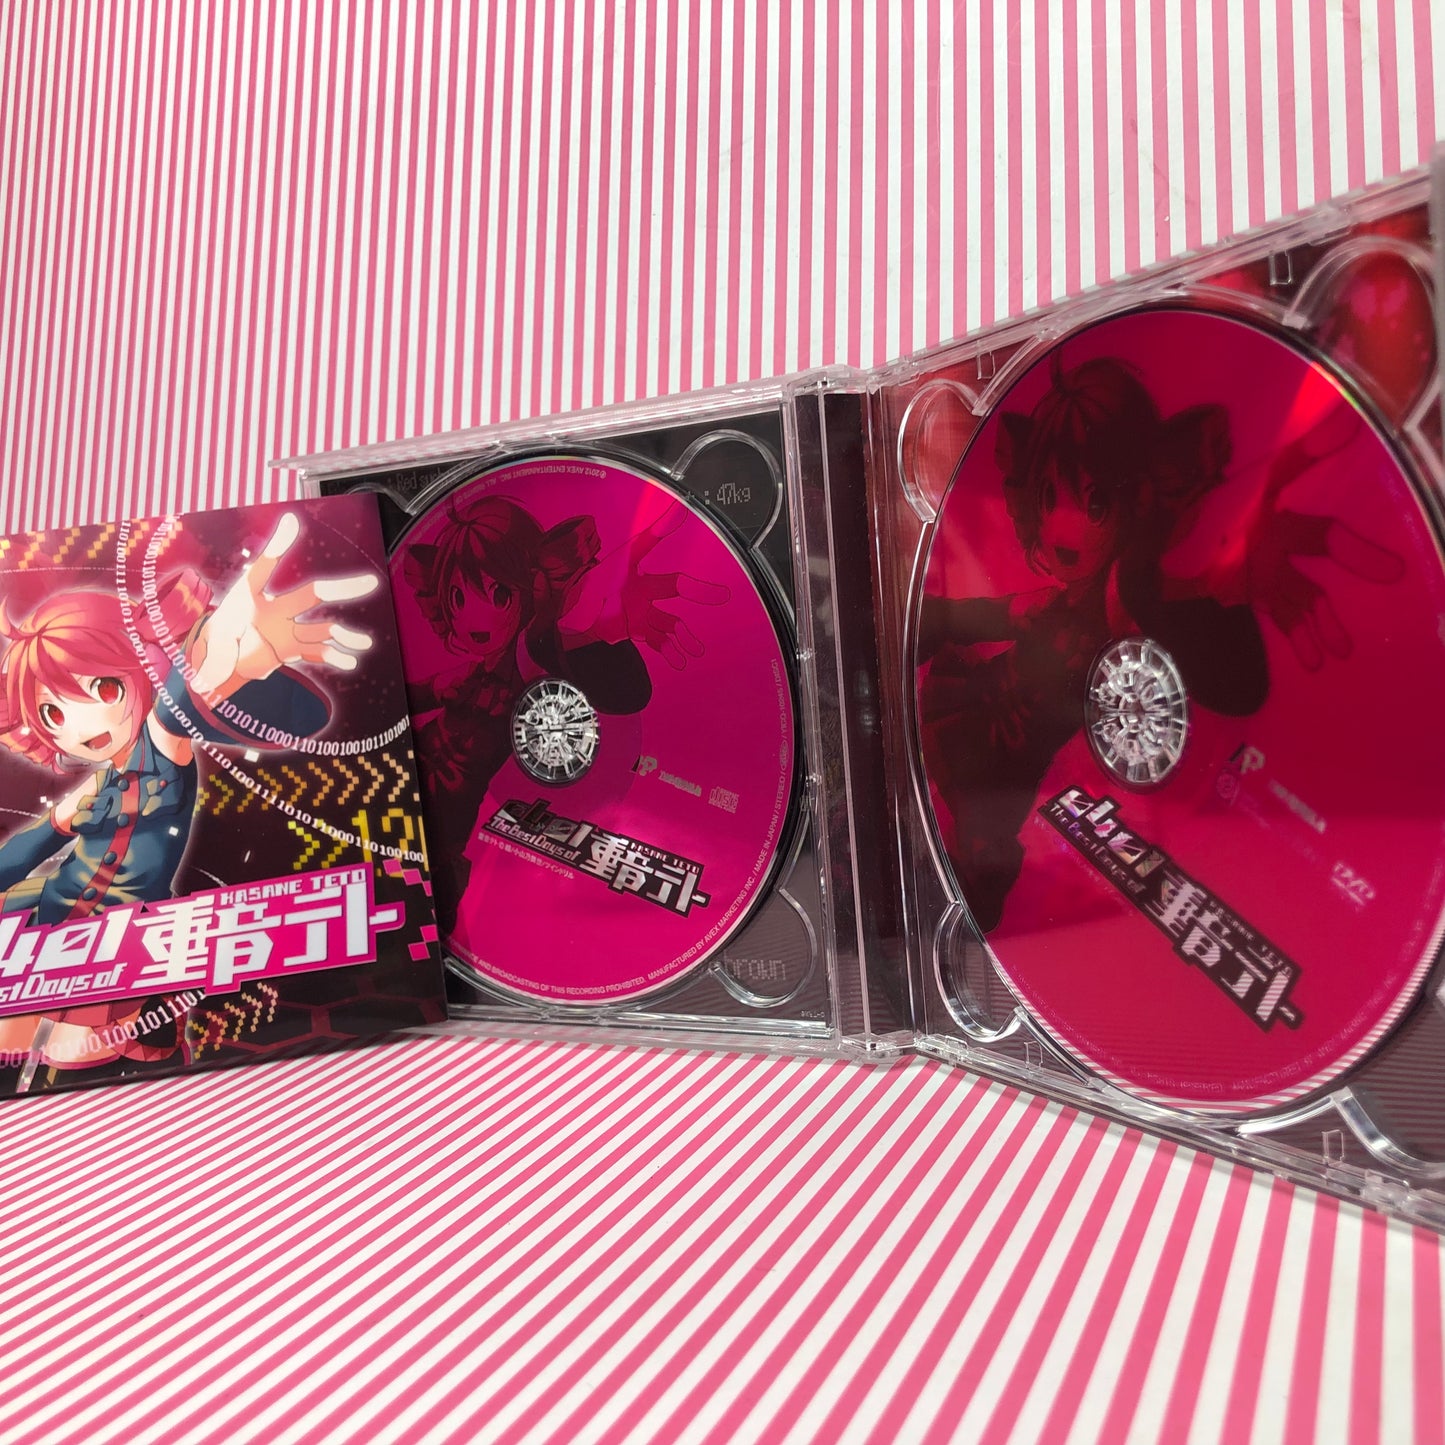 UTAU Les meilleurs jours de Kasane Teto [2 CD] Album CD (utilisé)